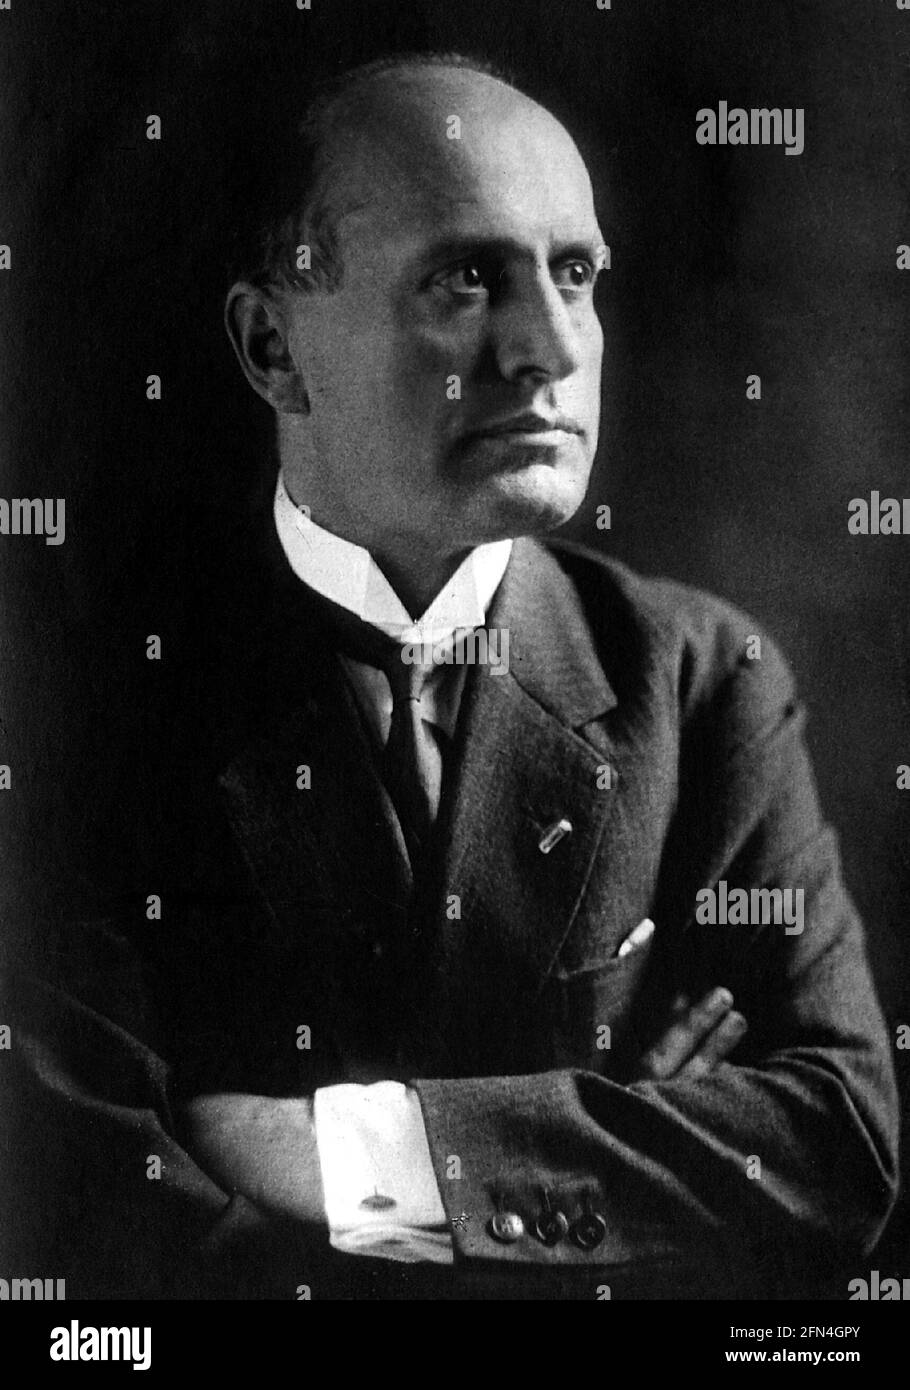 Mussolini, Benito, 29.7.1883 - 28.4.1945, italienischer Politiker, Premierminister 30.10.1922 - 25.7.1943, Porträt, 1920er Jahre, NUR REDAKTIONELLE VERWENDUNG Stockfoto